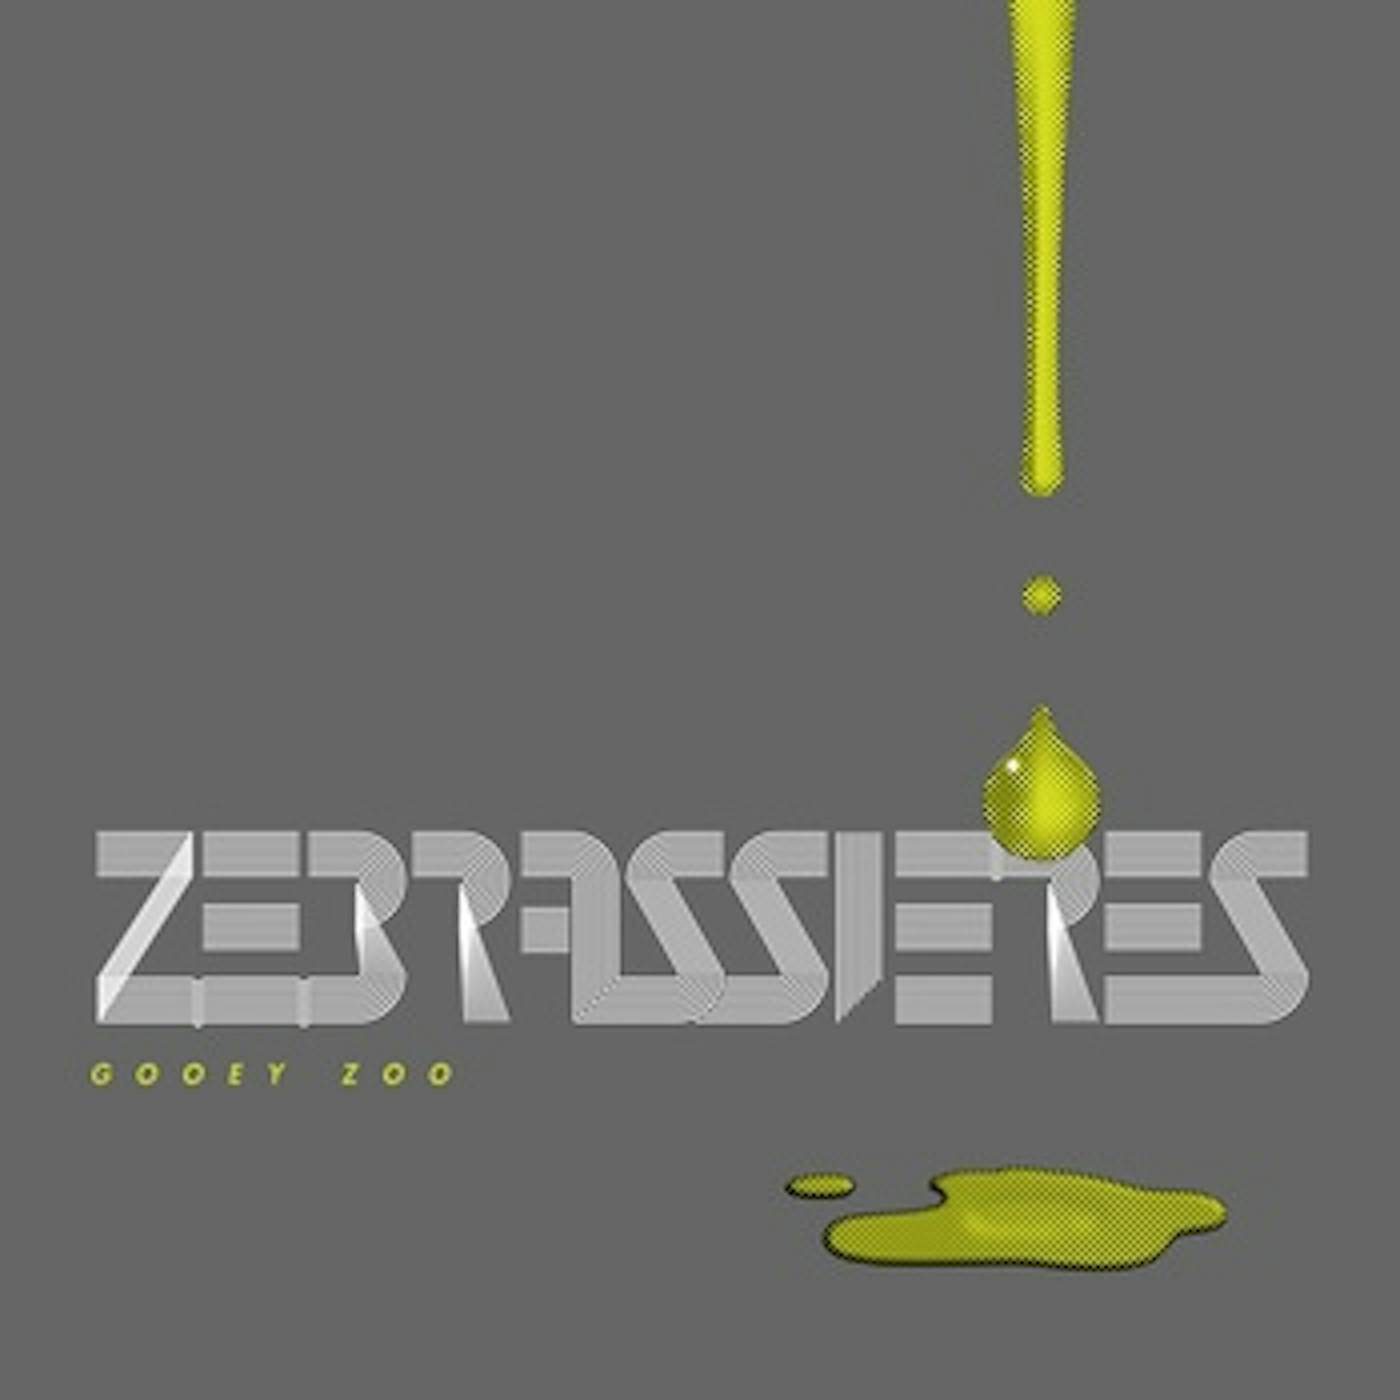 Zebrassieres Gooey Zoo Vinyl Record